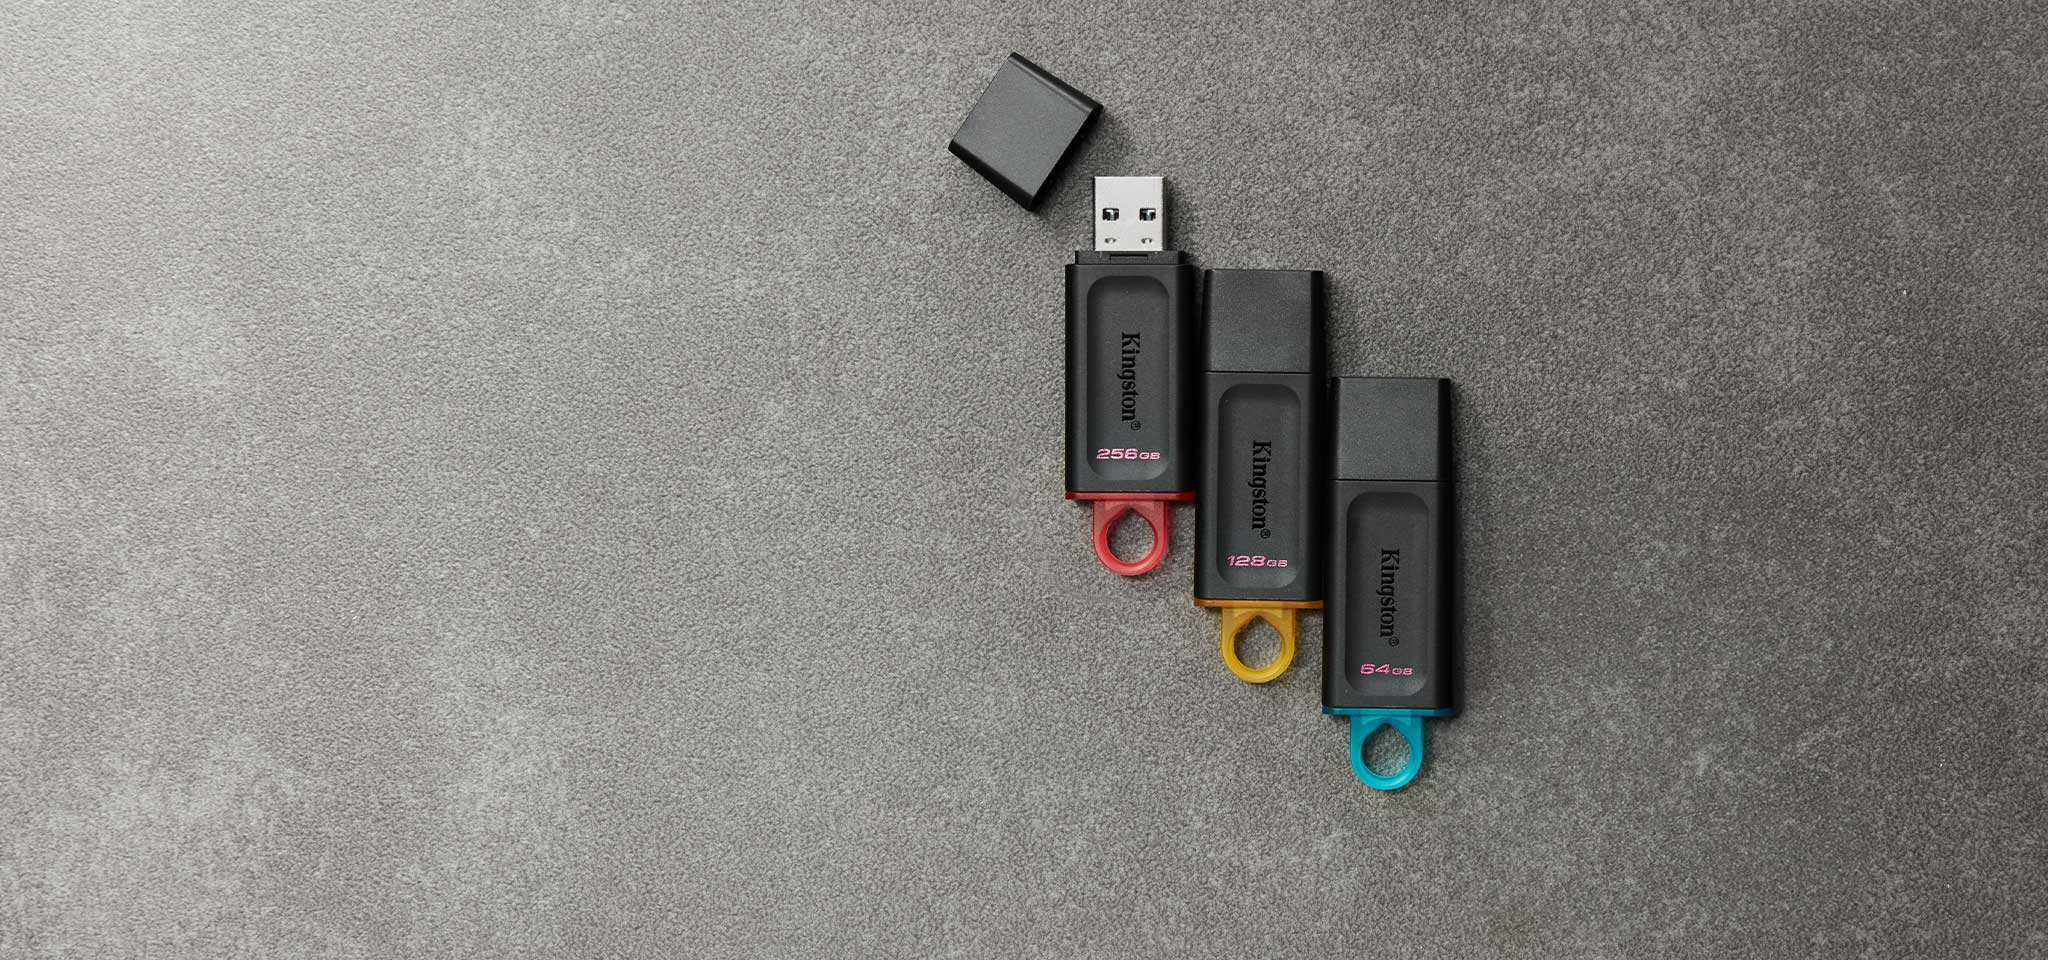 Чотири різноманітні USB флеш-накопичувачі Exodia різних кольорів залежно від ємності, що лежать на сірому килимі